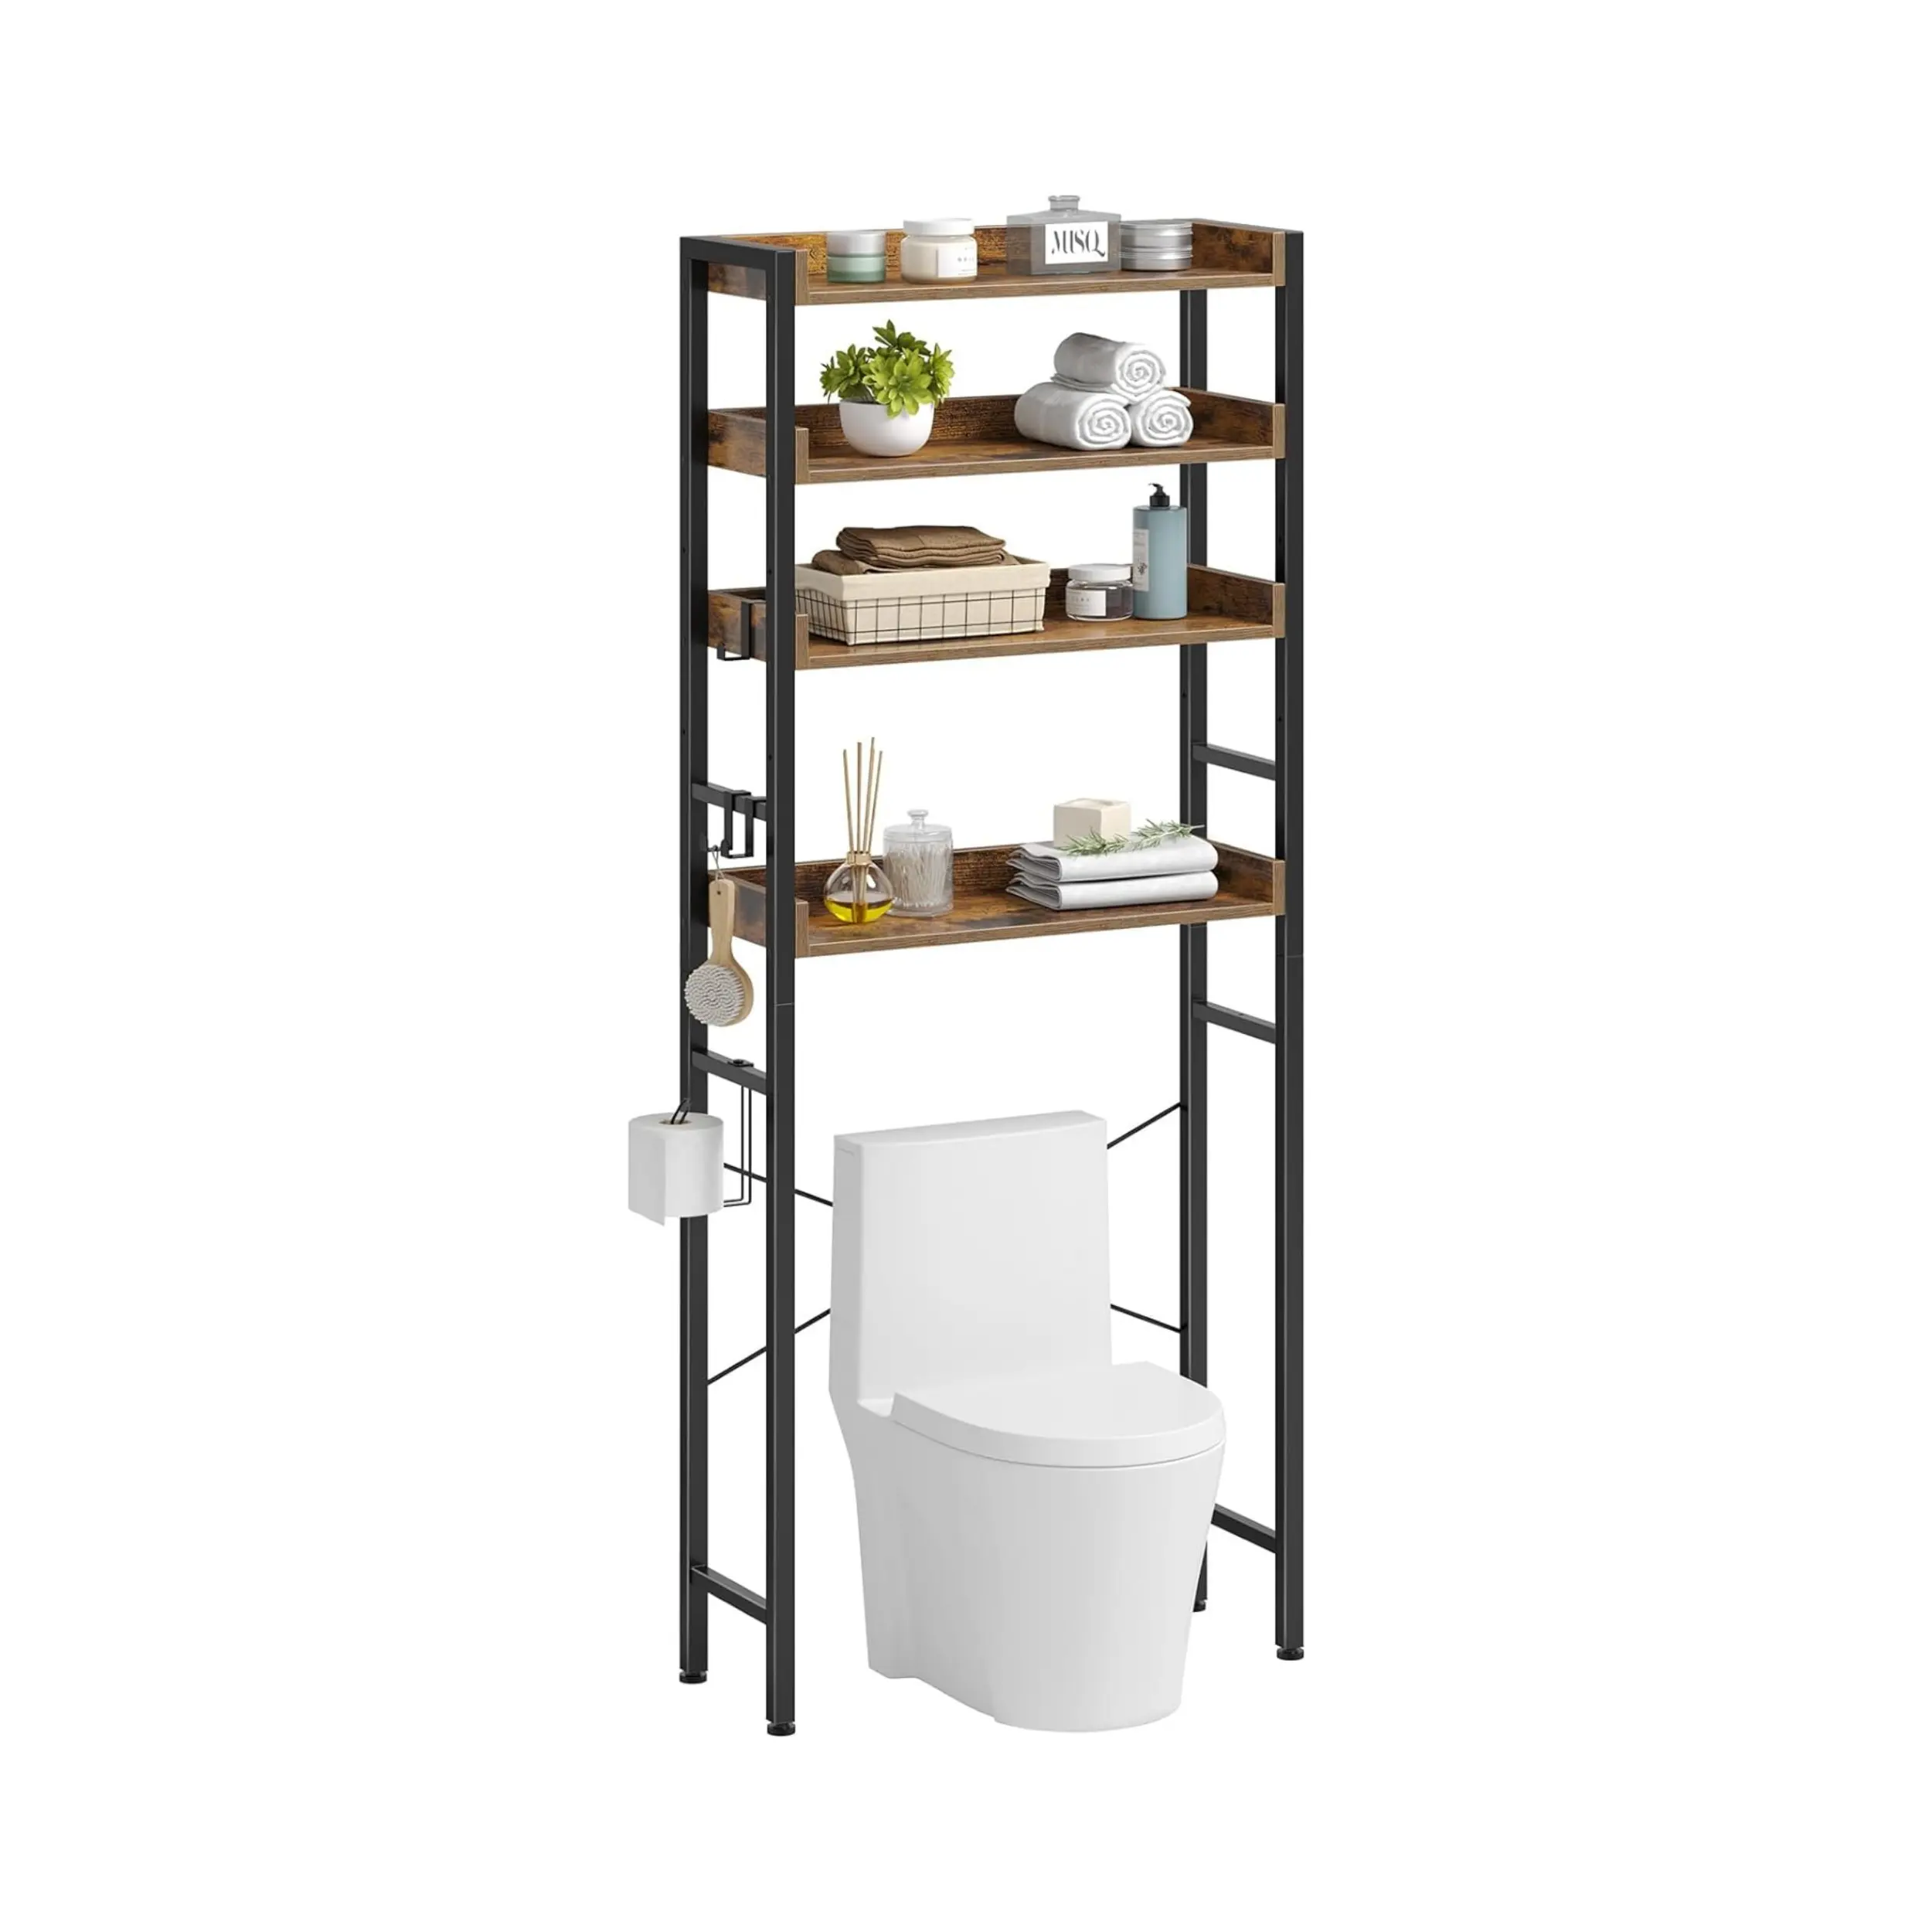 木製の4層トイレ収納バスルームオーガナイザートイレ棚の上調節可能な棚付きバスルーム収納ラック